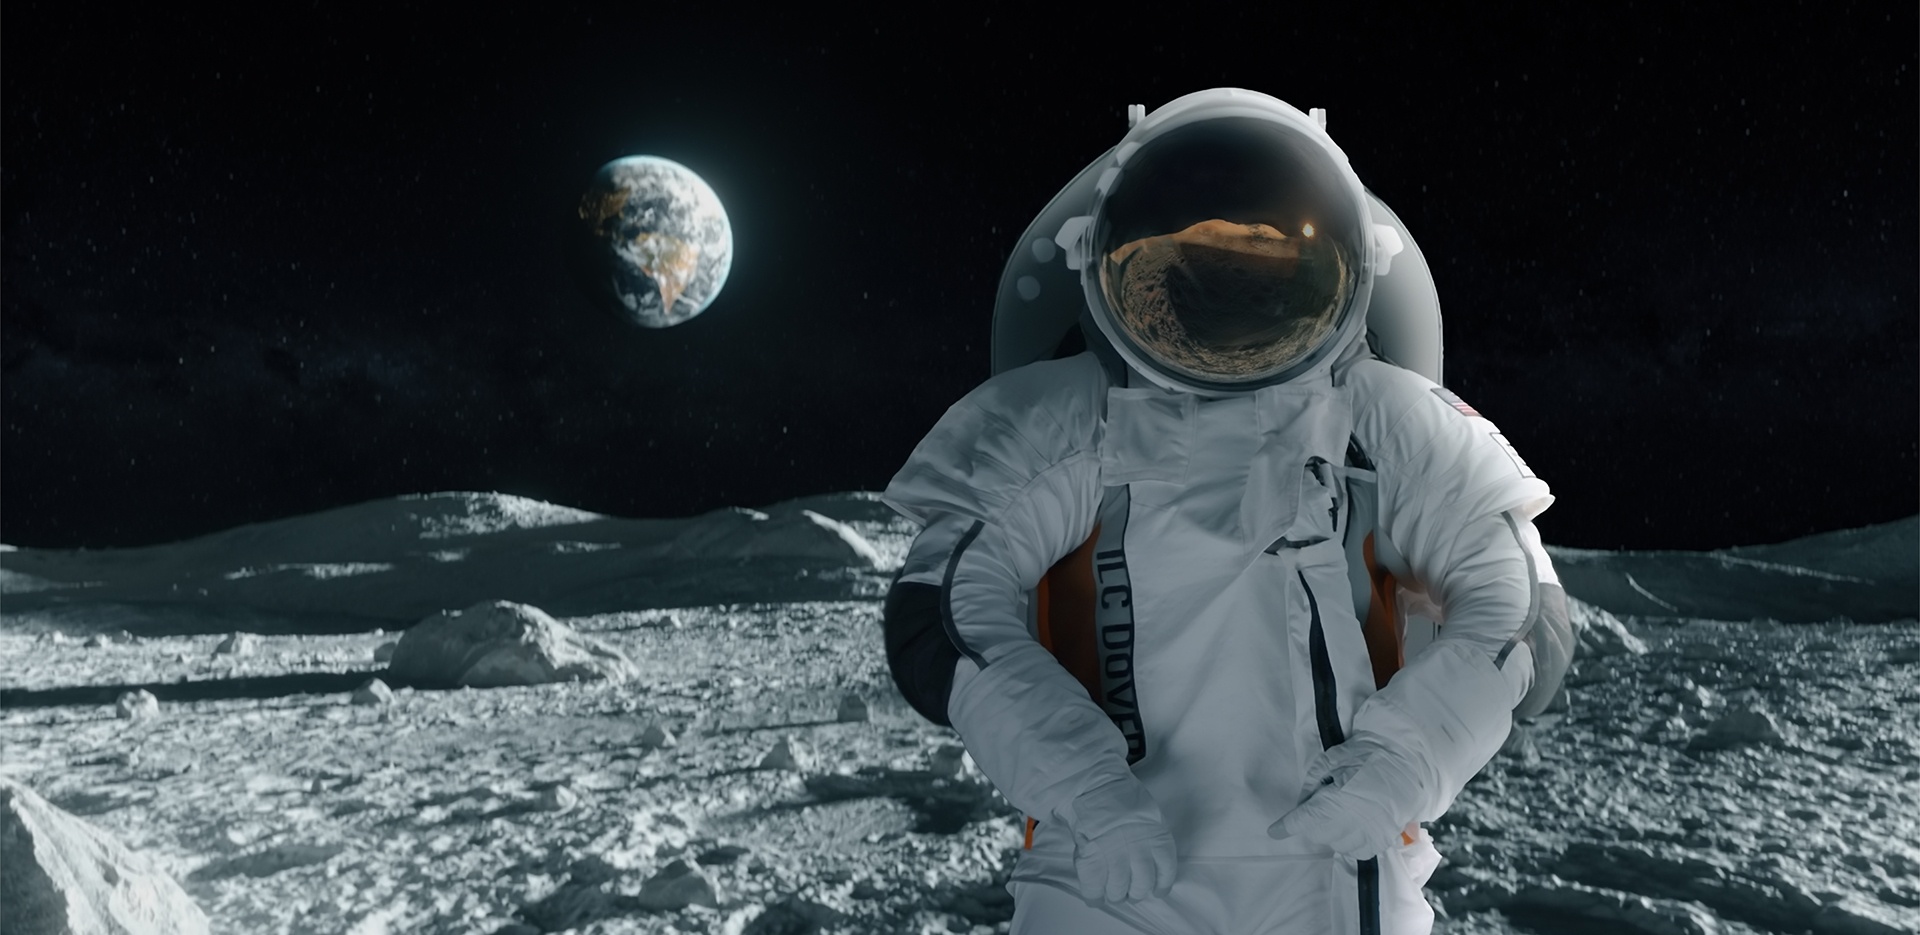 Moonwalker wearing Collins Aerospace spacesuit